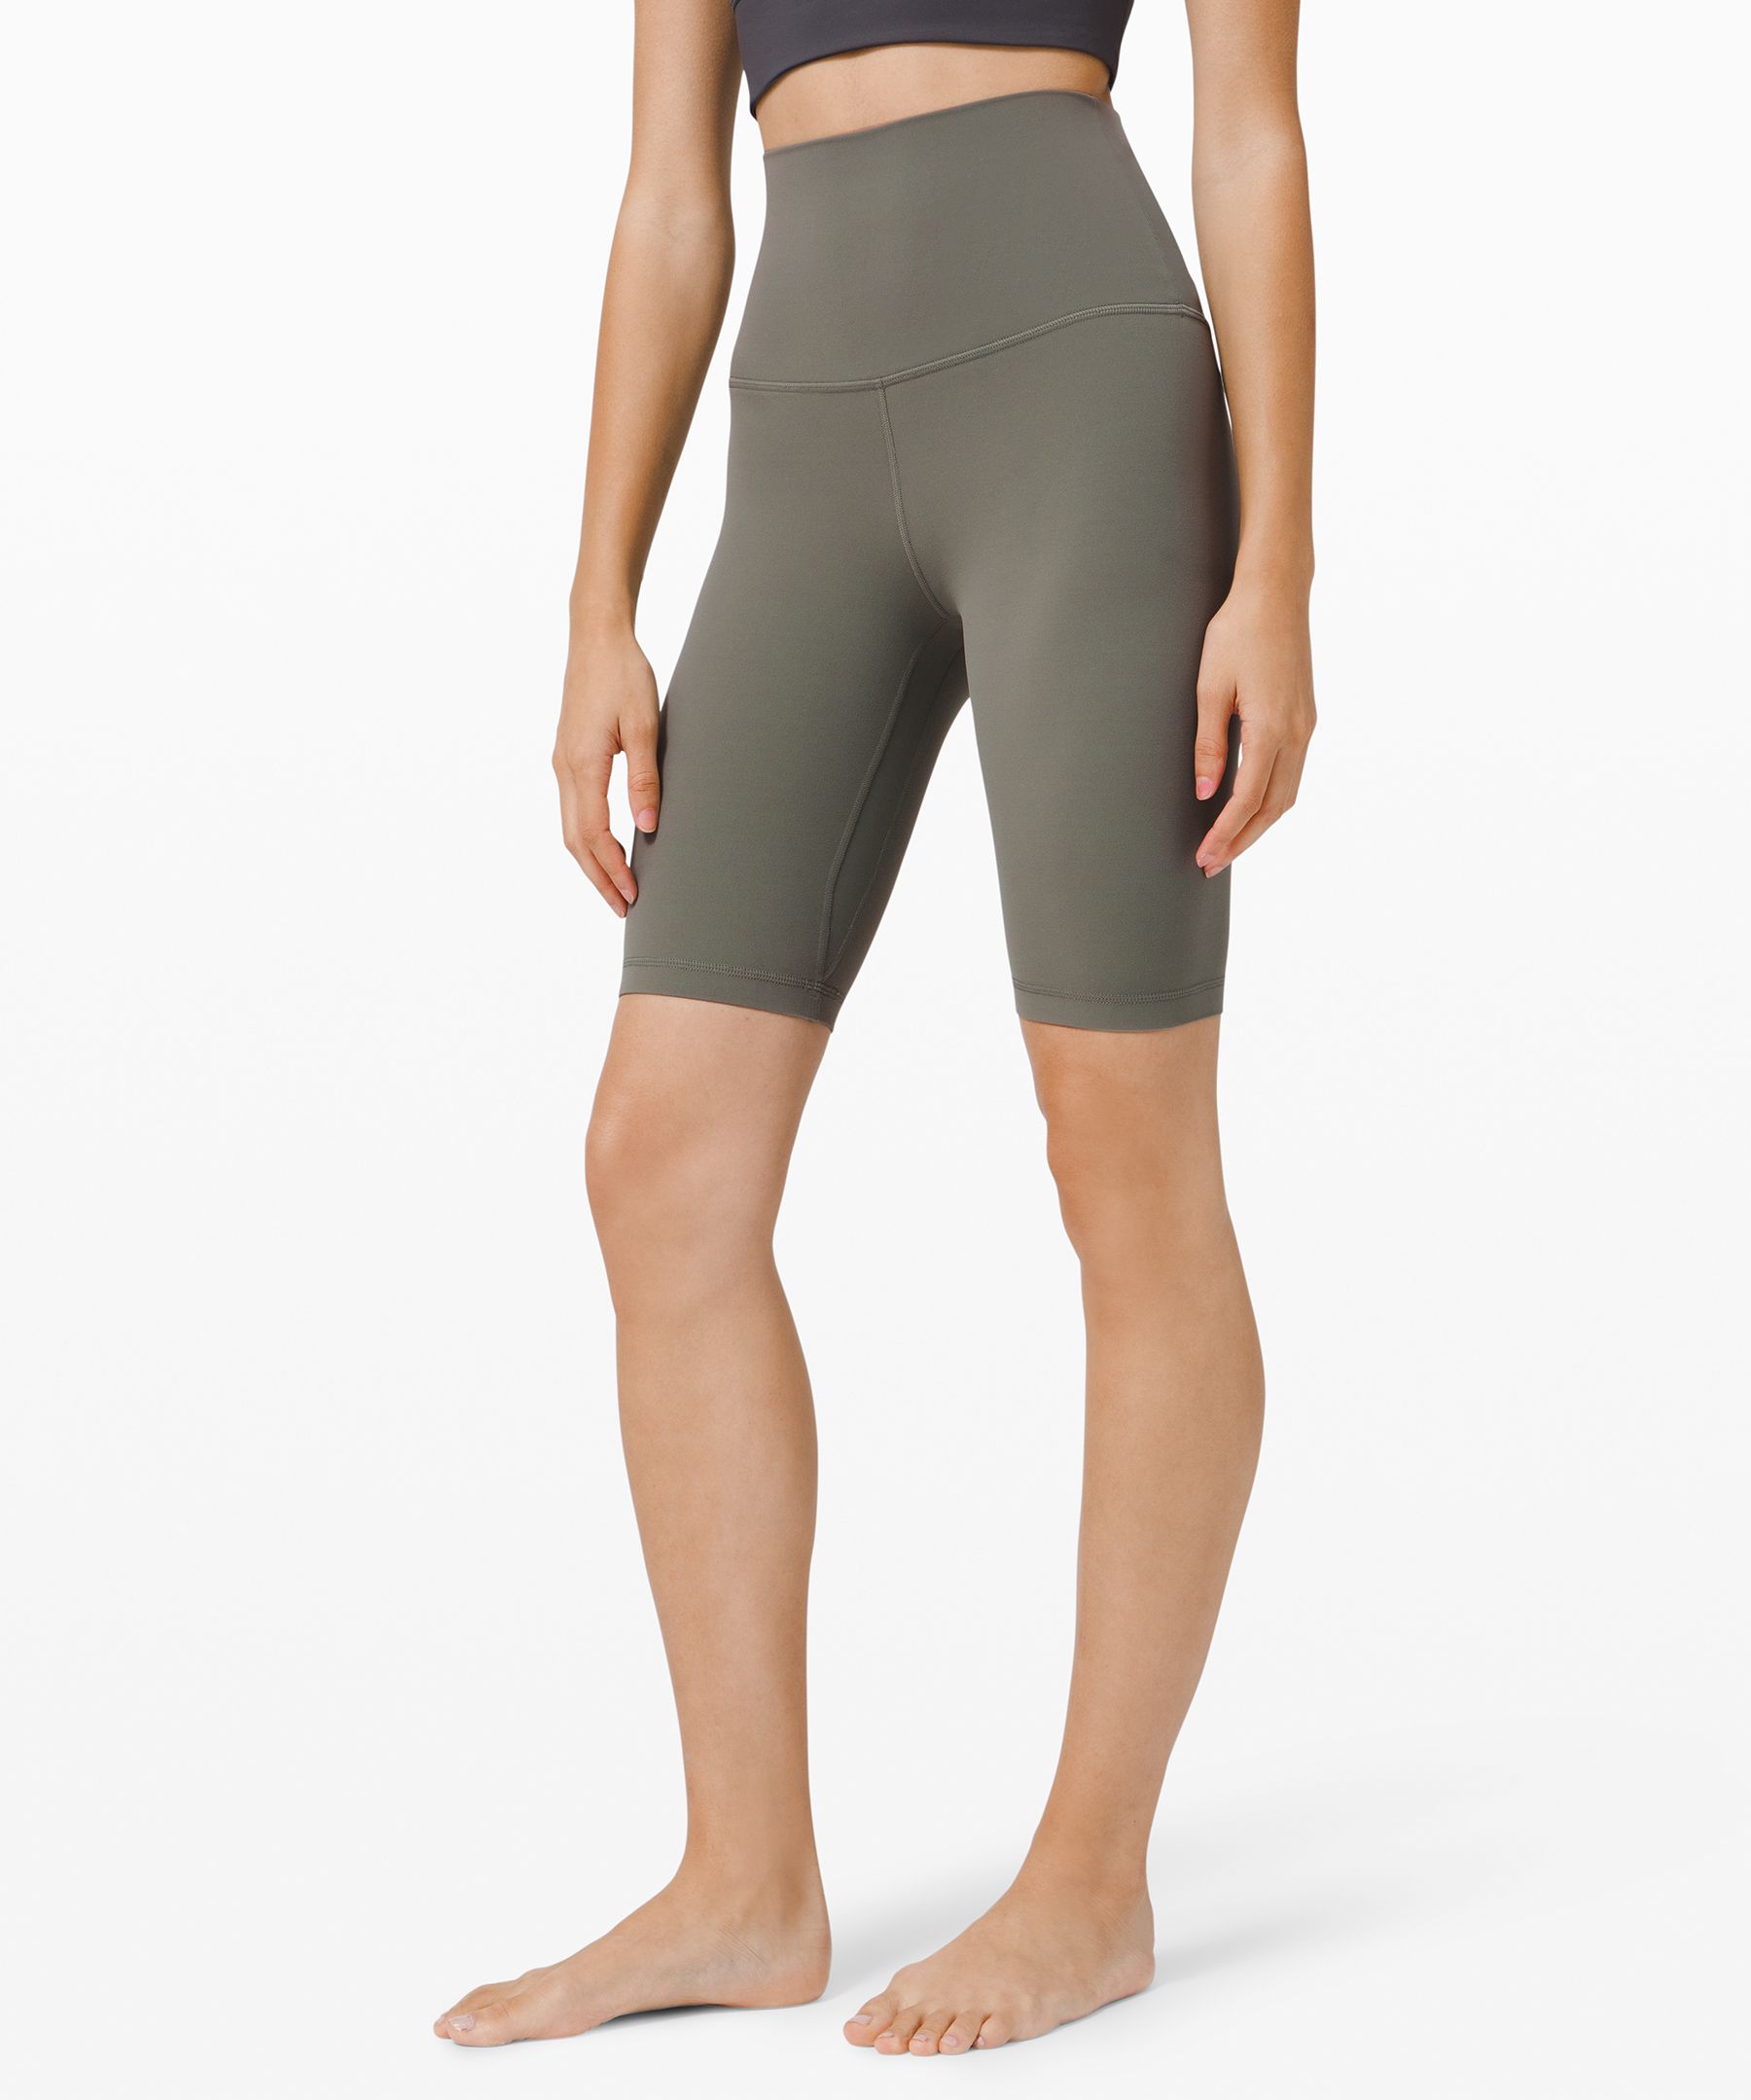 Lululemon Align™ Super-high-rise Shorts 10" In Grey Sage